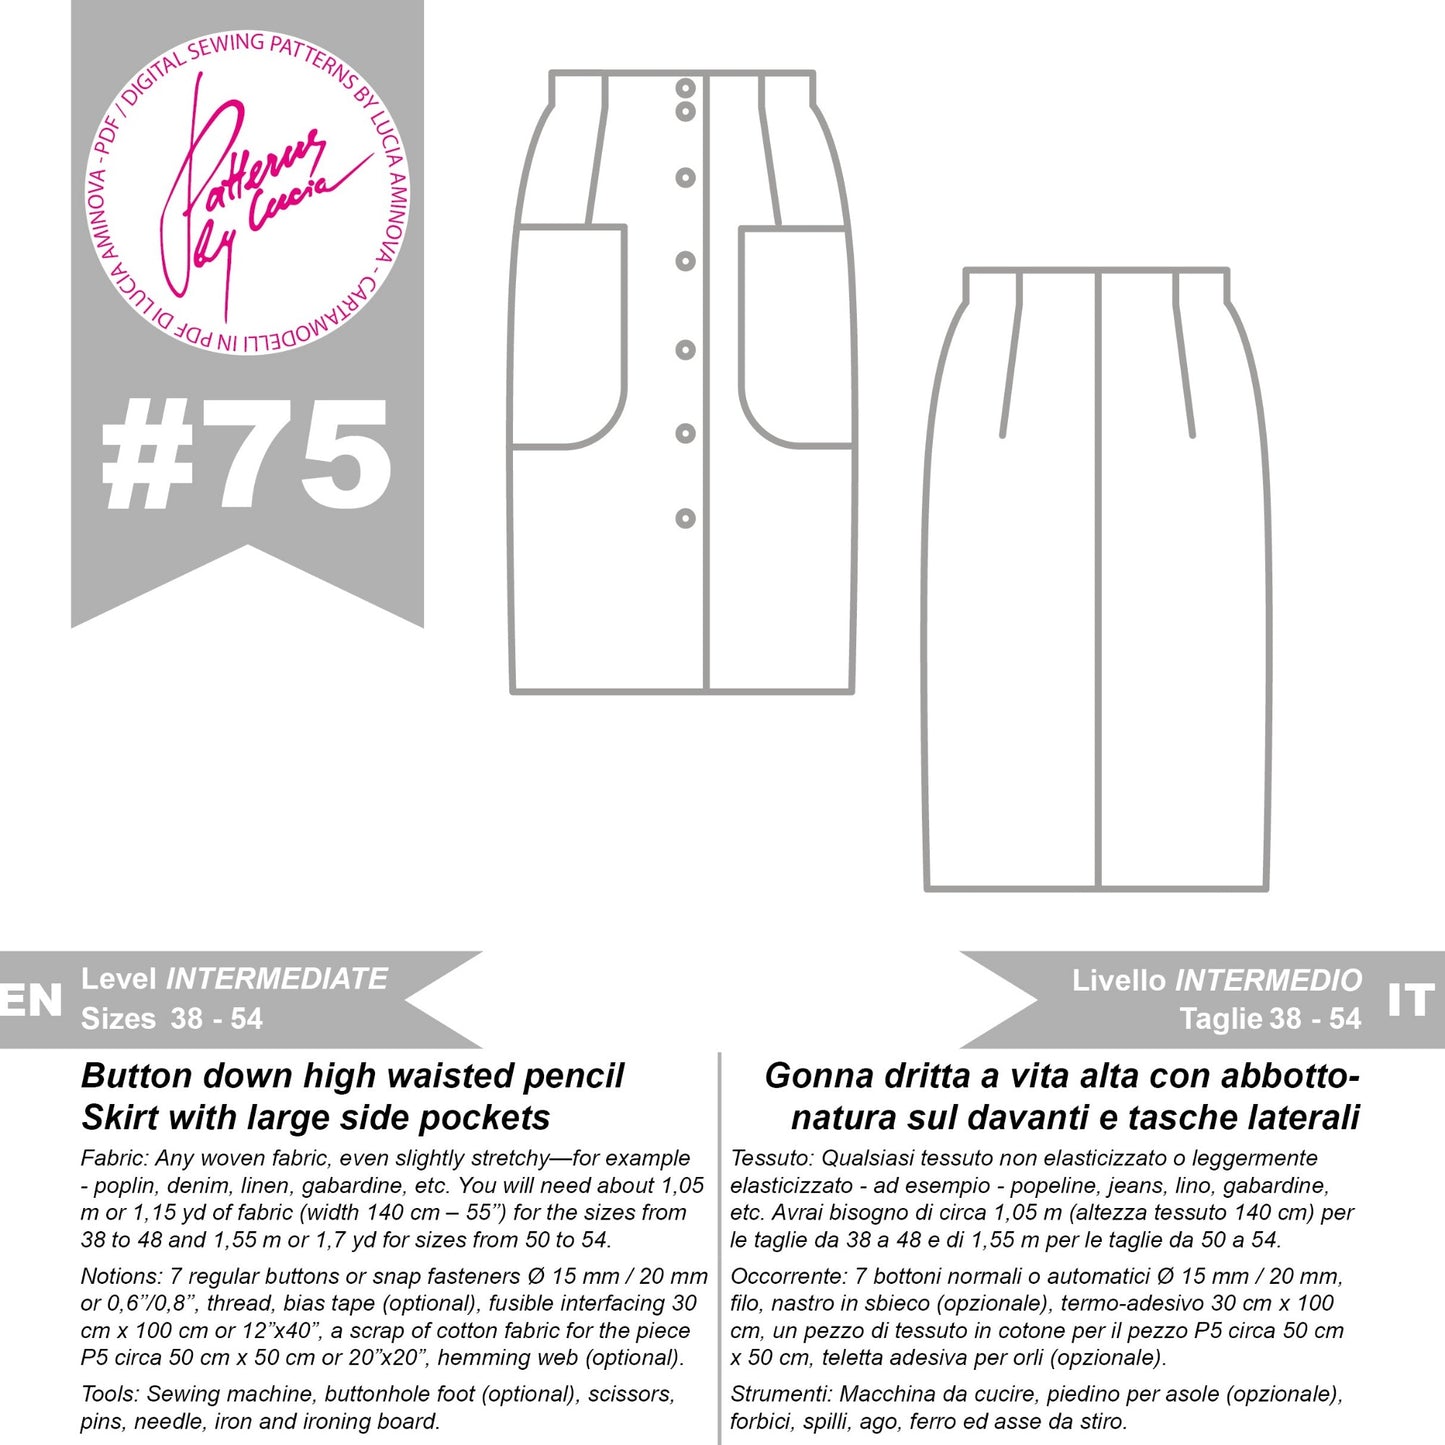 pdf sewing pattern cartamodello